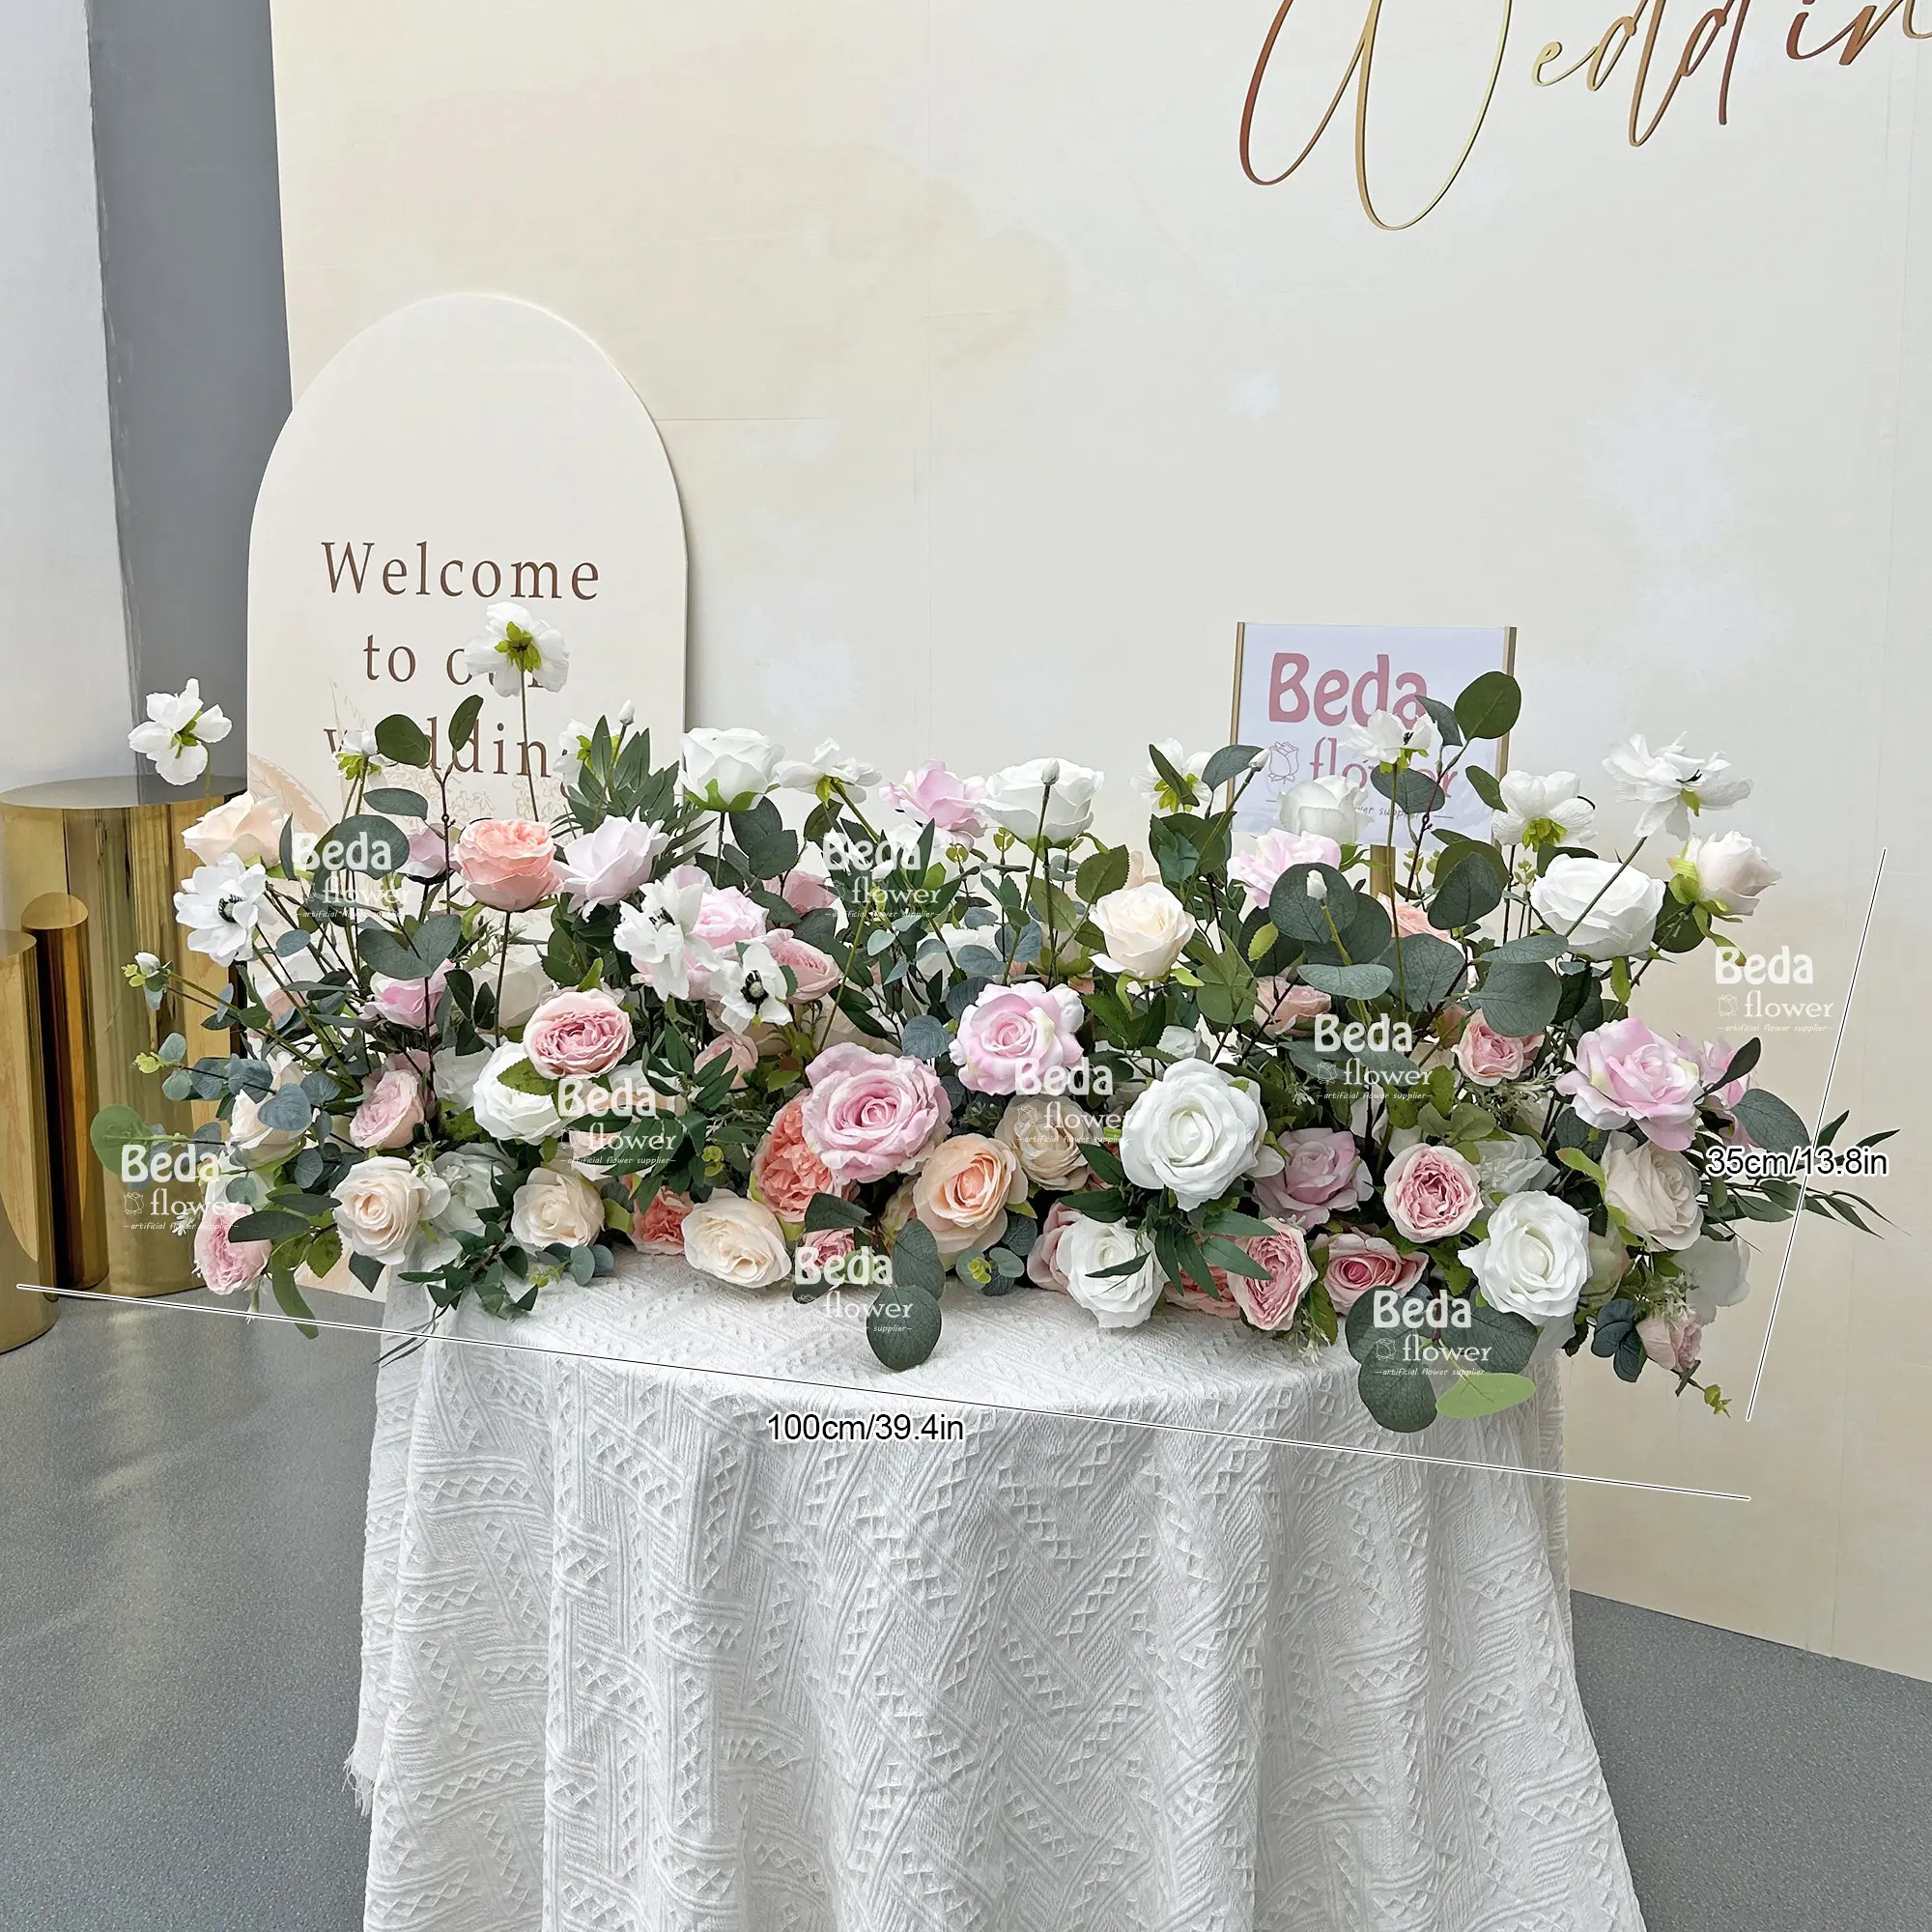 Oem sang trọng sự kiện bên cưới Hoa bóng sắp xếp handmade trung tâm đám cưới nhân tạo Rose Flower Balls